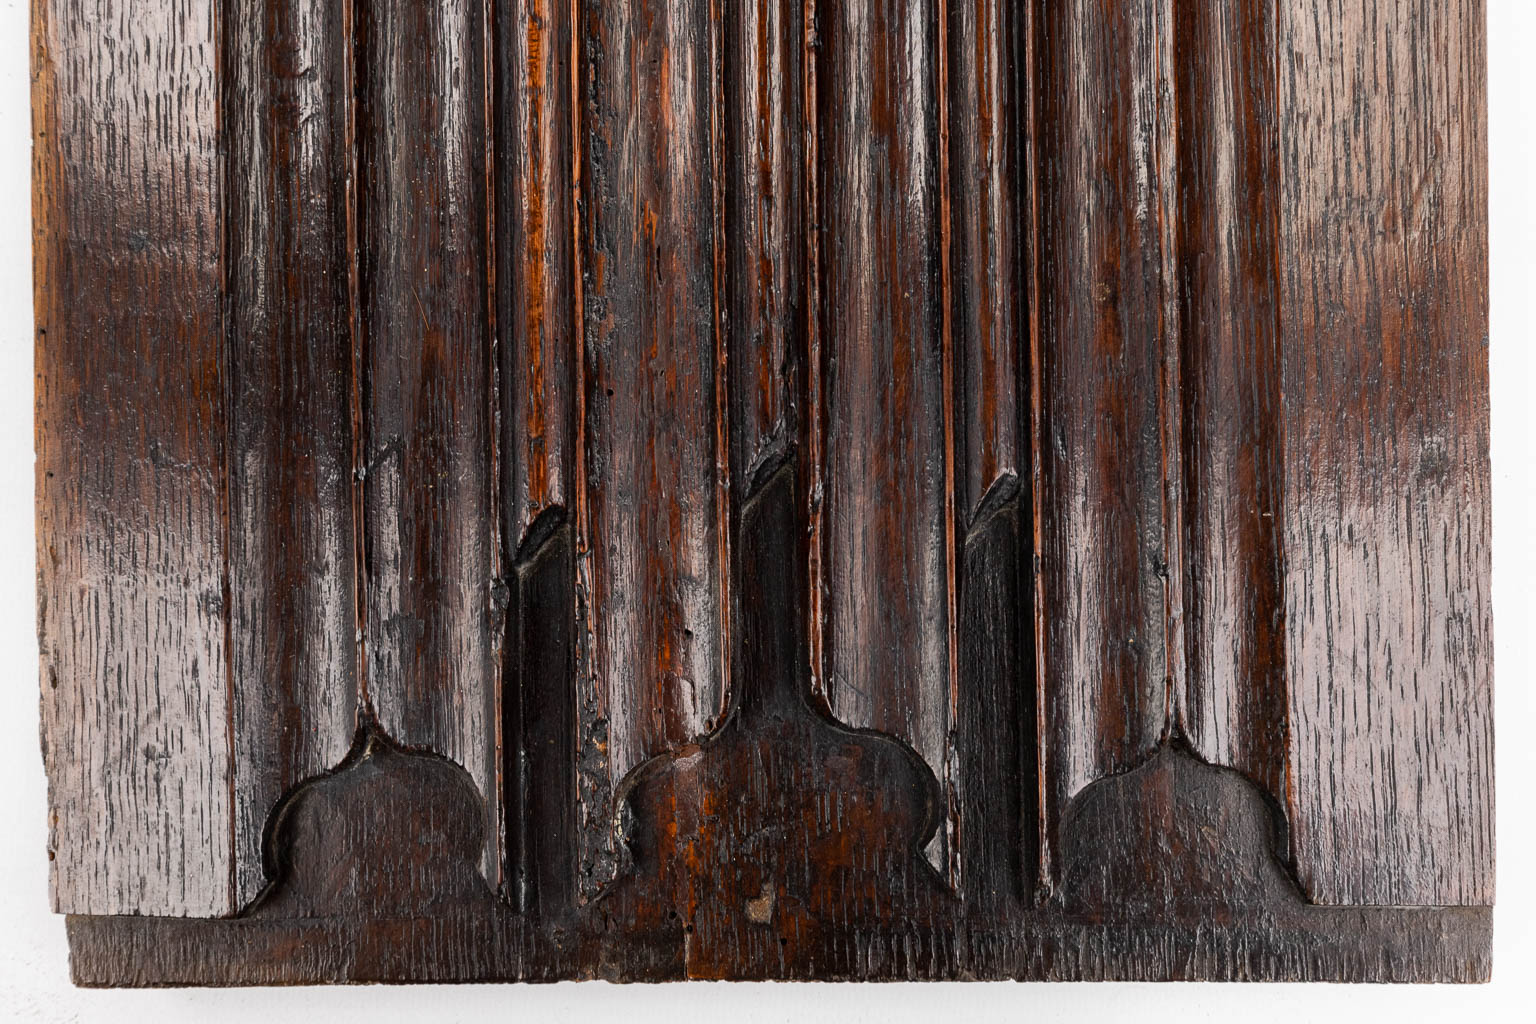 Een grote collectie antieke panelen, onderdelen en houtsculpturen, 16de tot 18de eeuw. (H:98 cm)